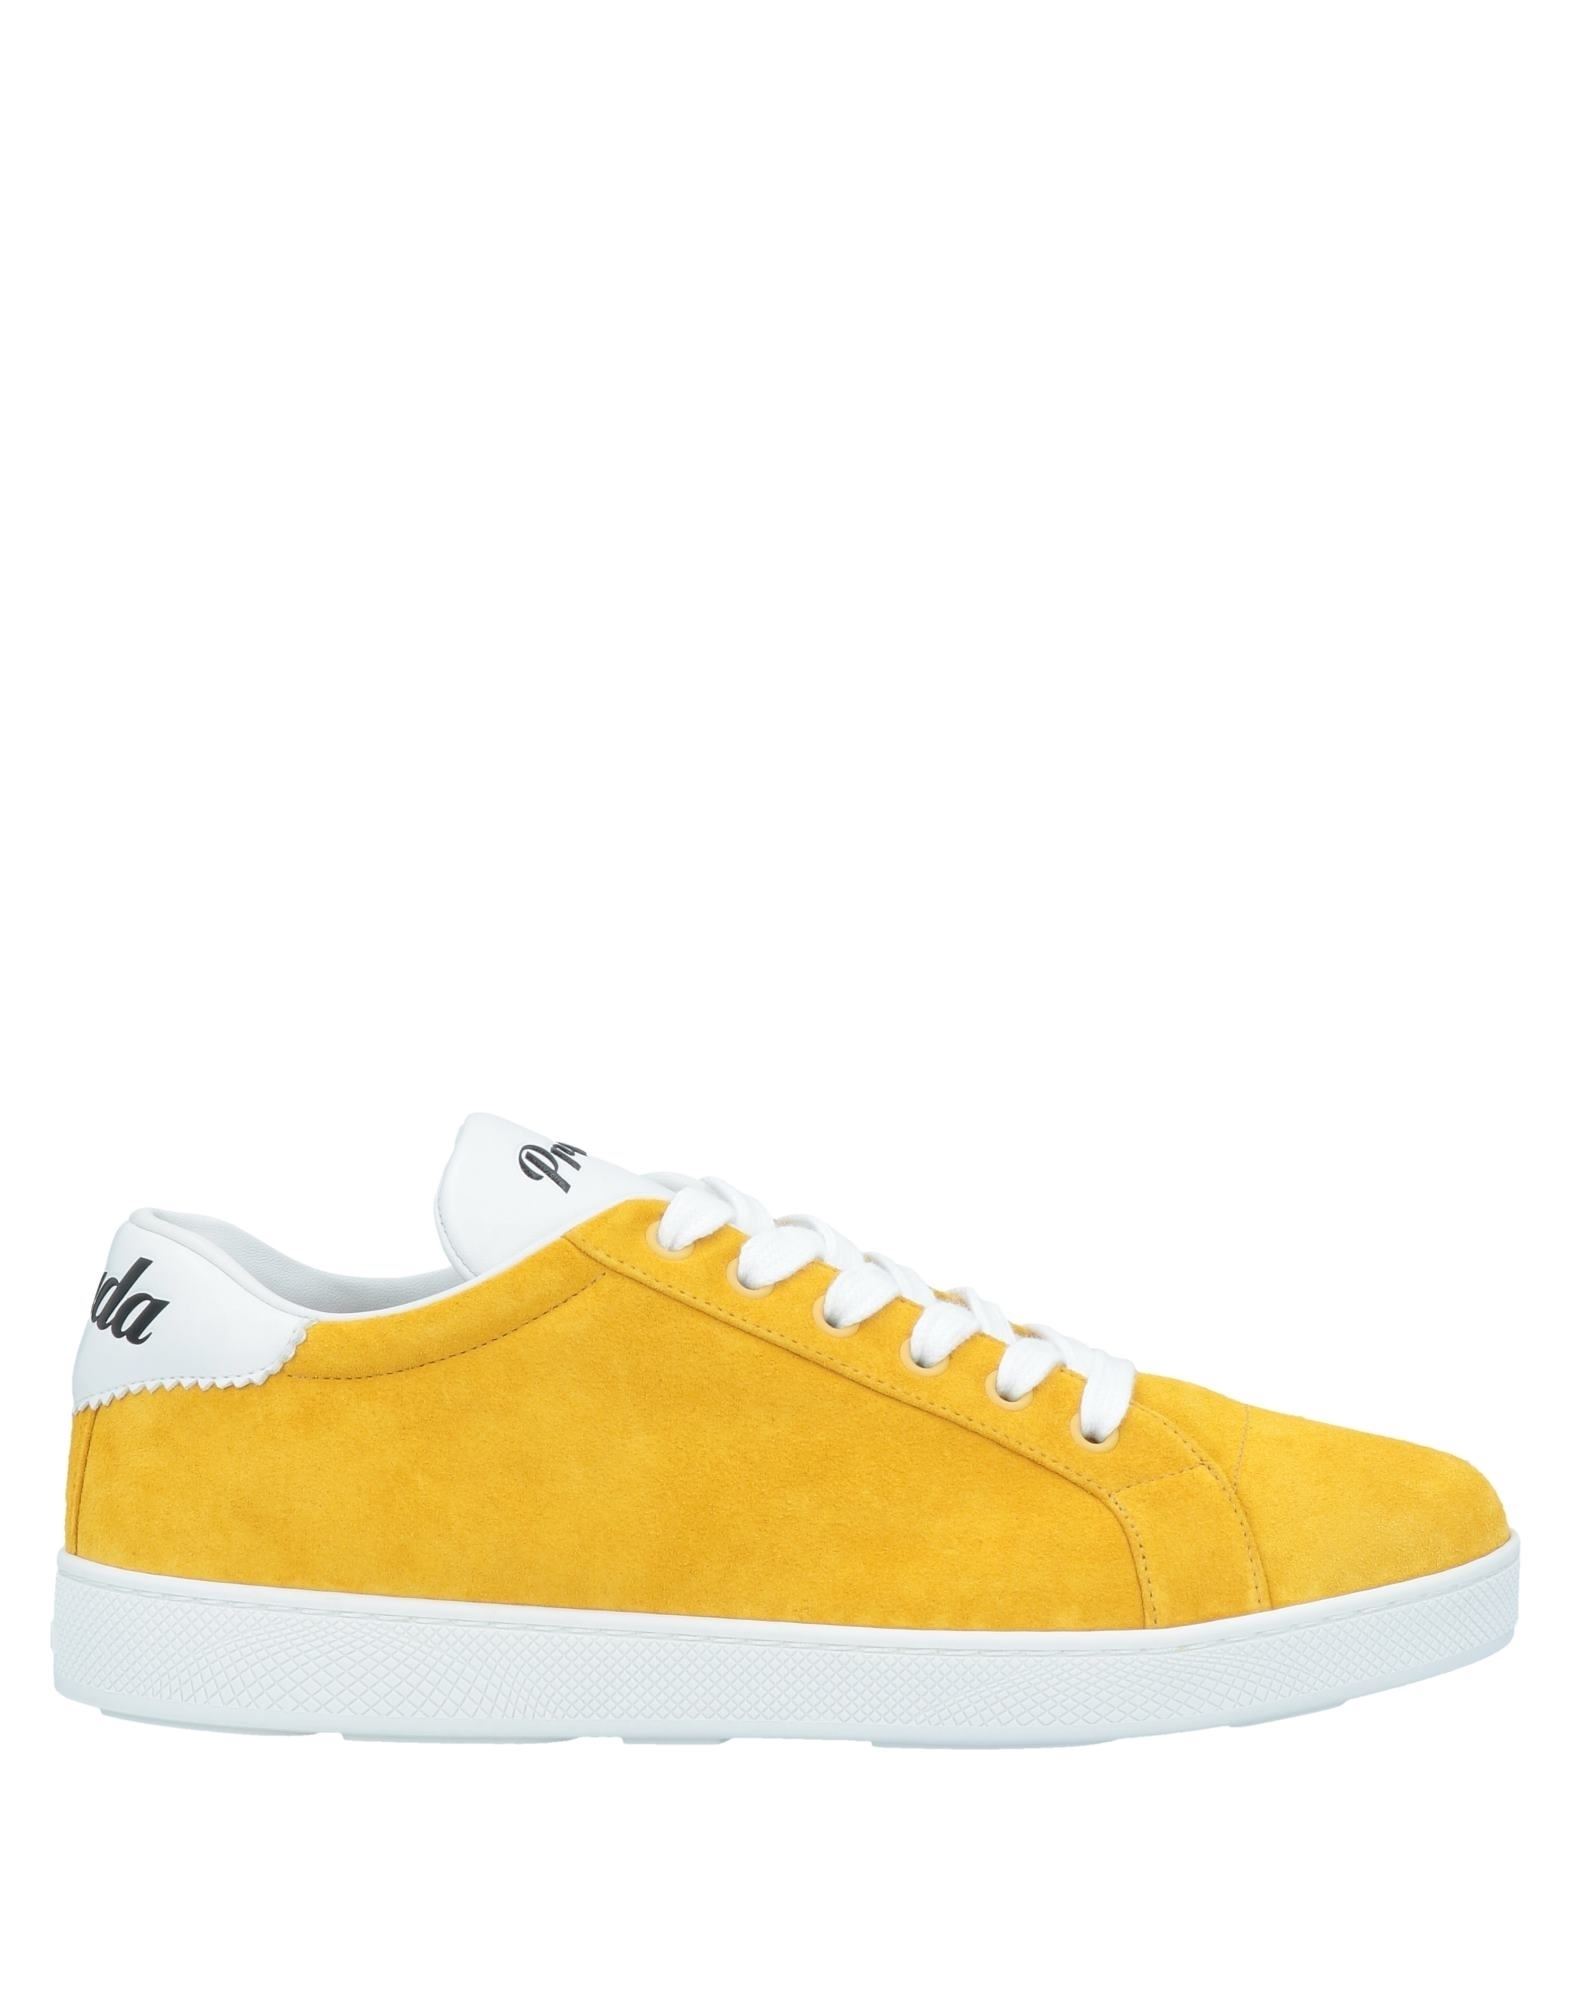 Prada Sneakers In Yellow | ModeSens